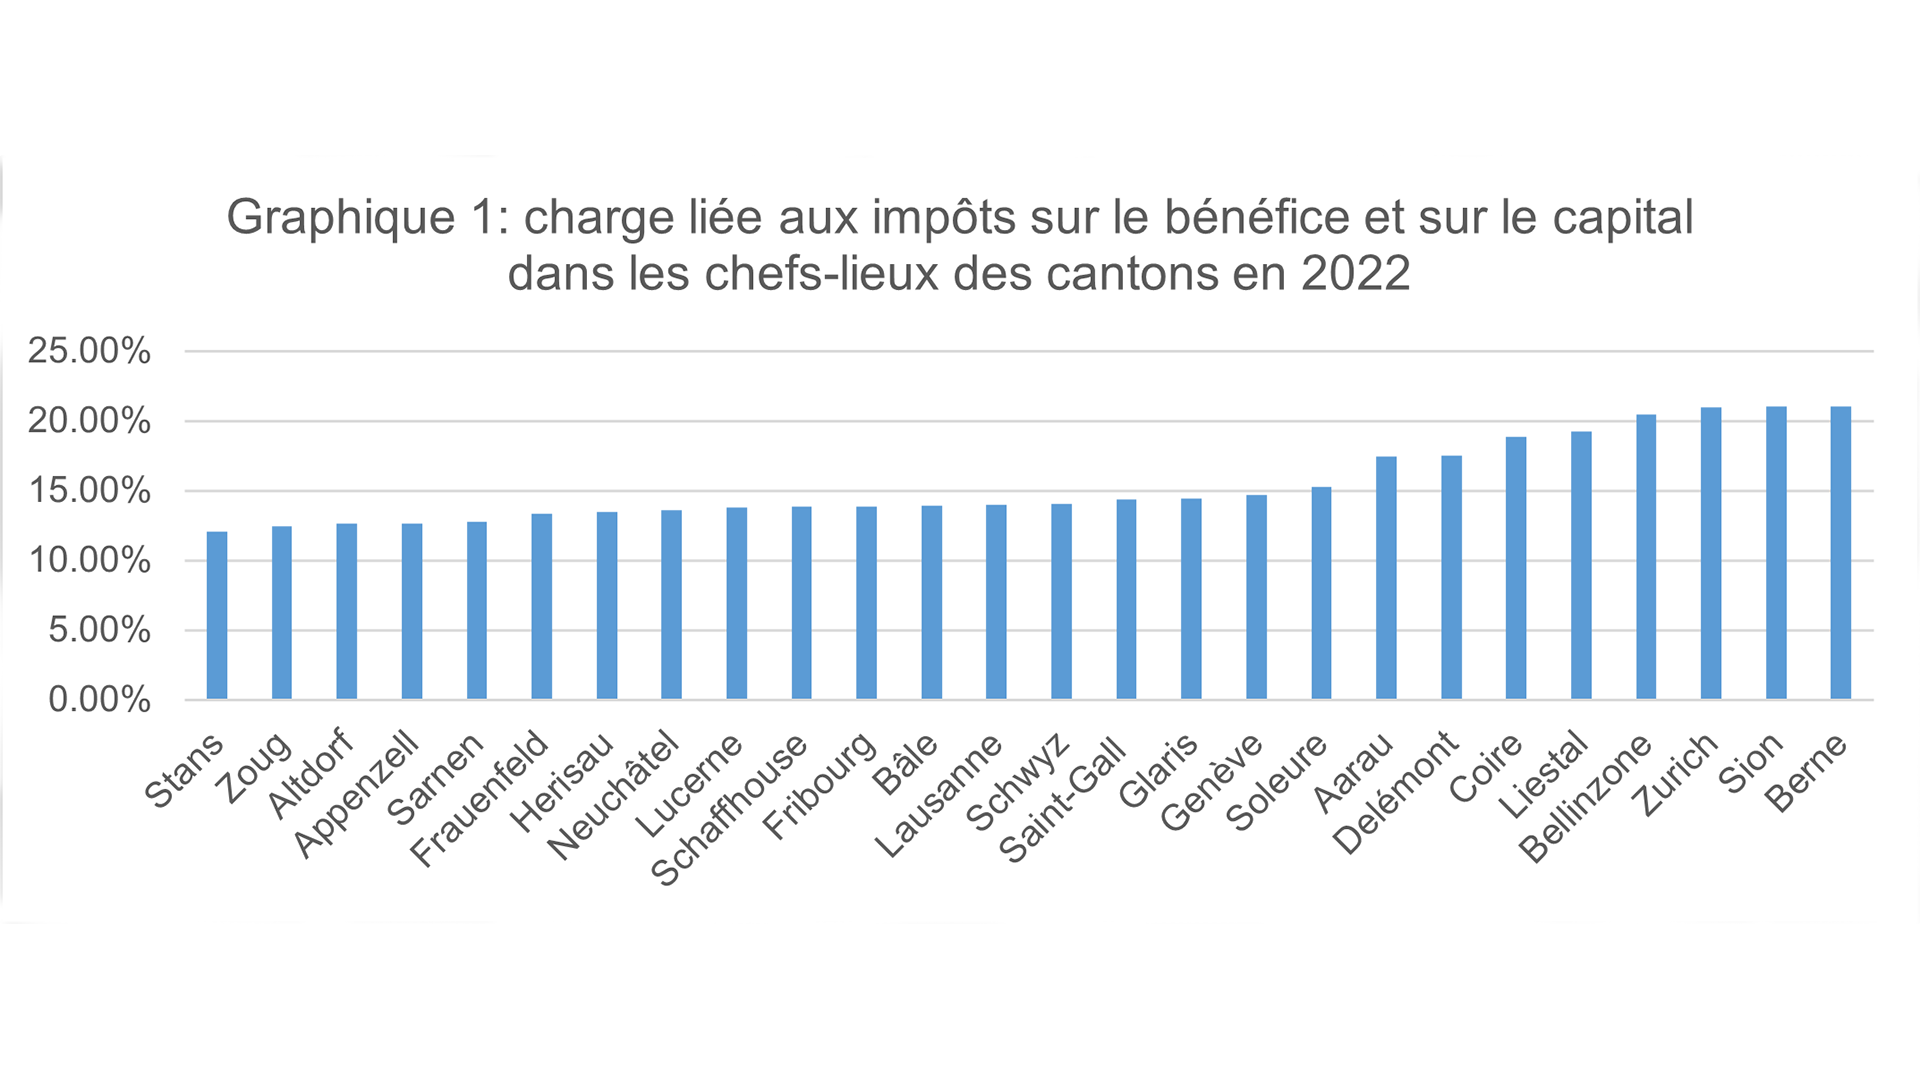 Graphique 1: charge liée aux impôts sur le bénéfice et sur le capital dans les chefs-lieux des cantons en 2022